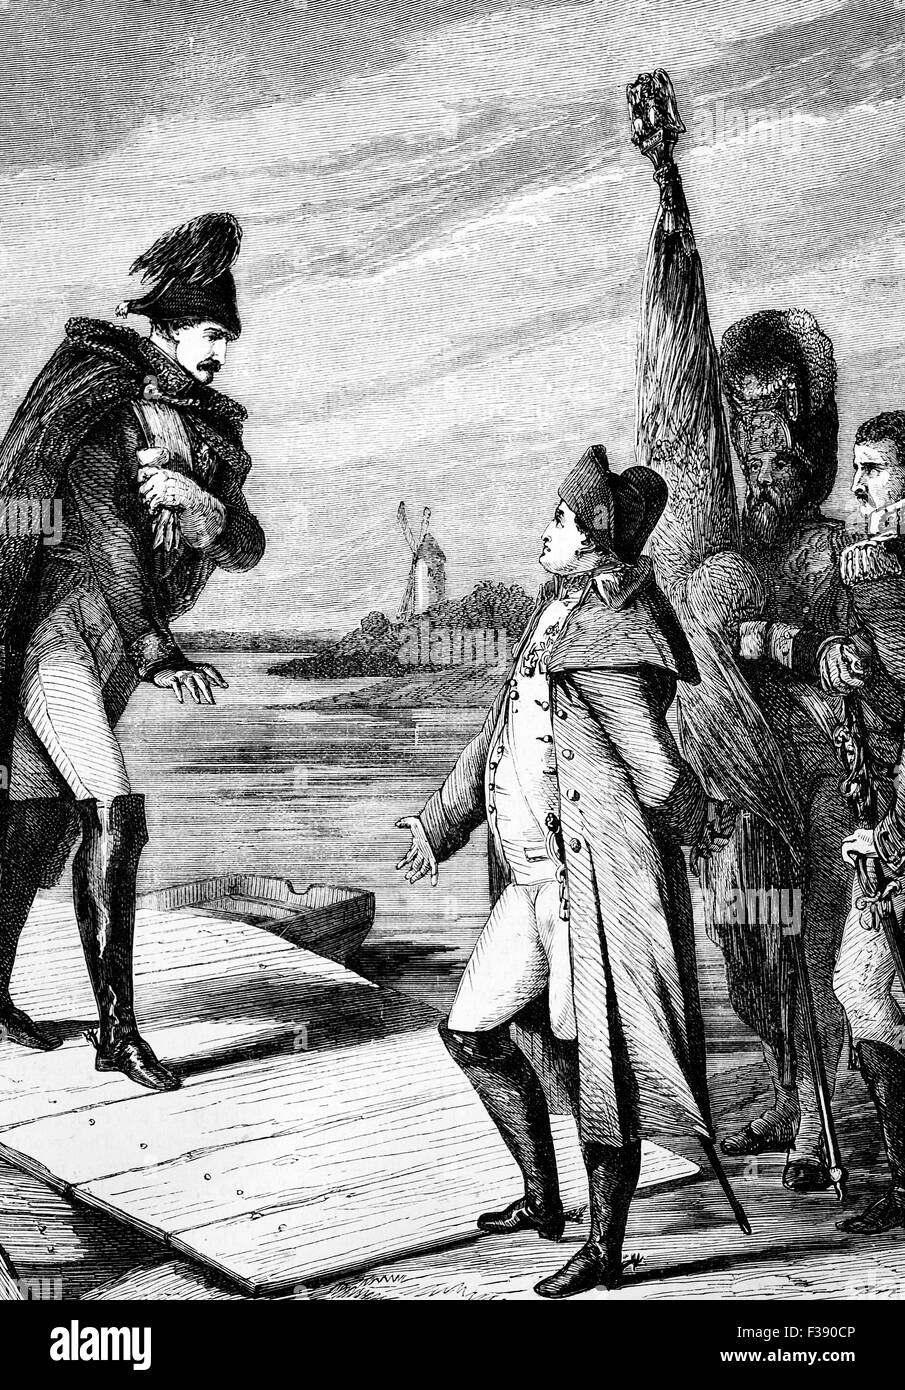 Napoleon i. von Frankreich und Zar Alexander i. von Russland-treffen zu den ersten Vertrag von Tilsit am 7. Juli 1807 auf einem Floß mitten im Fluss Neman in Kaliningrad Oblast, Russland unterzeichnen. Stockfoto